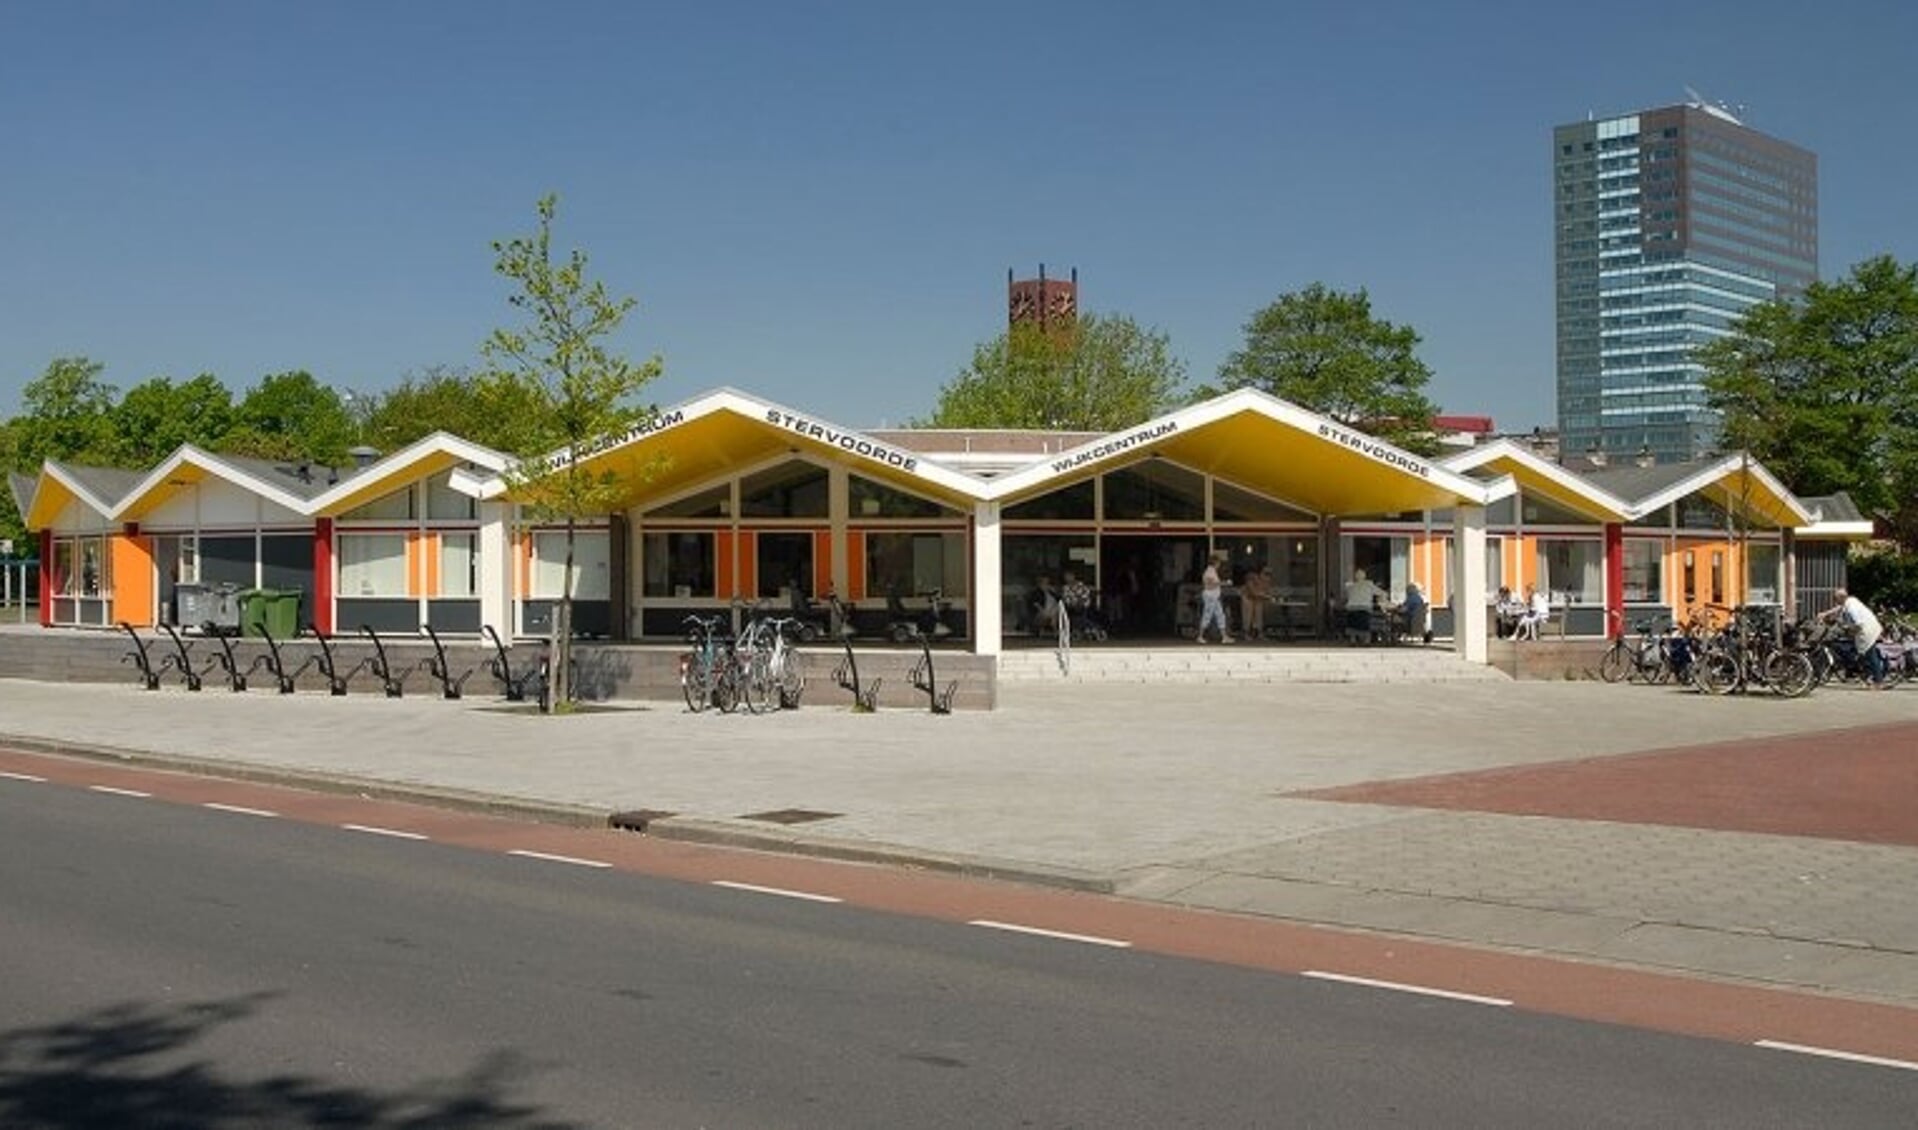 Wijkcentrum Stervoorde, een van de wijkcentra waar Welzijn Rijswijk gevestigd is.